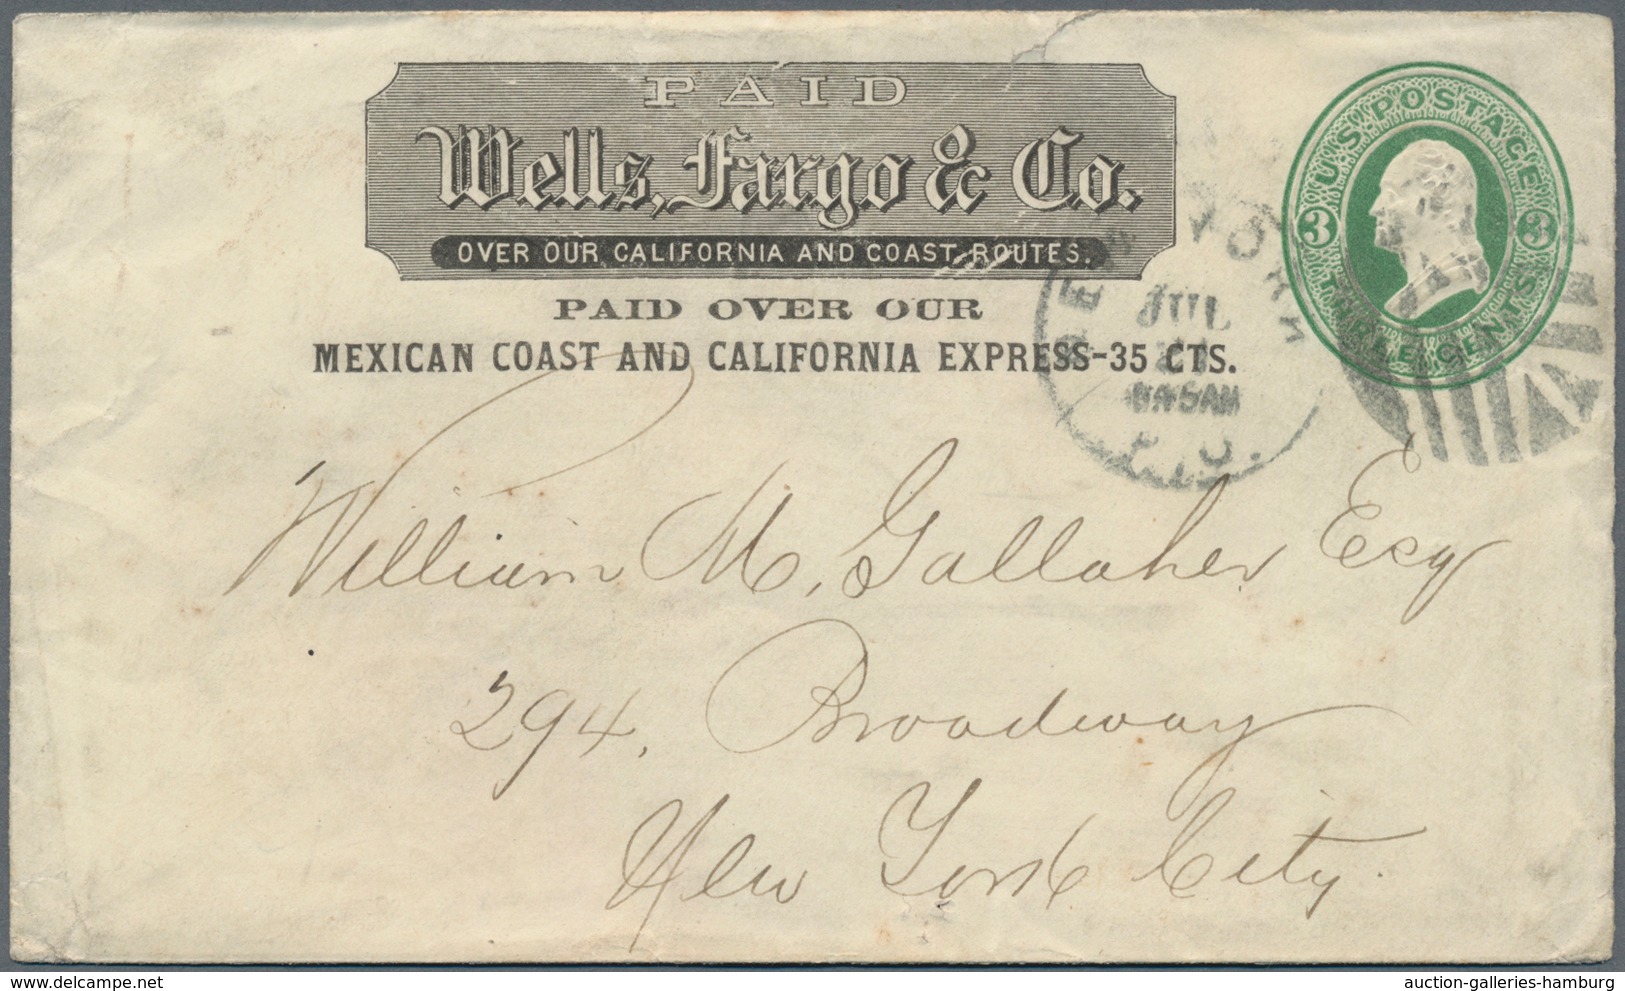 Vereinigte Staaten von Amerika - Ganzsachen: 1869/1899, four different "Wells Fargo" stationery enve